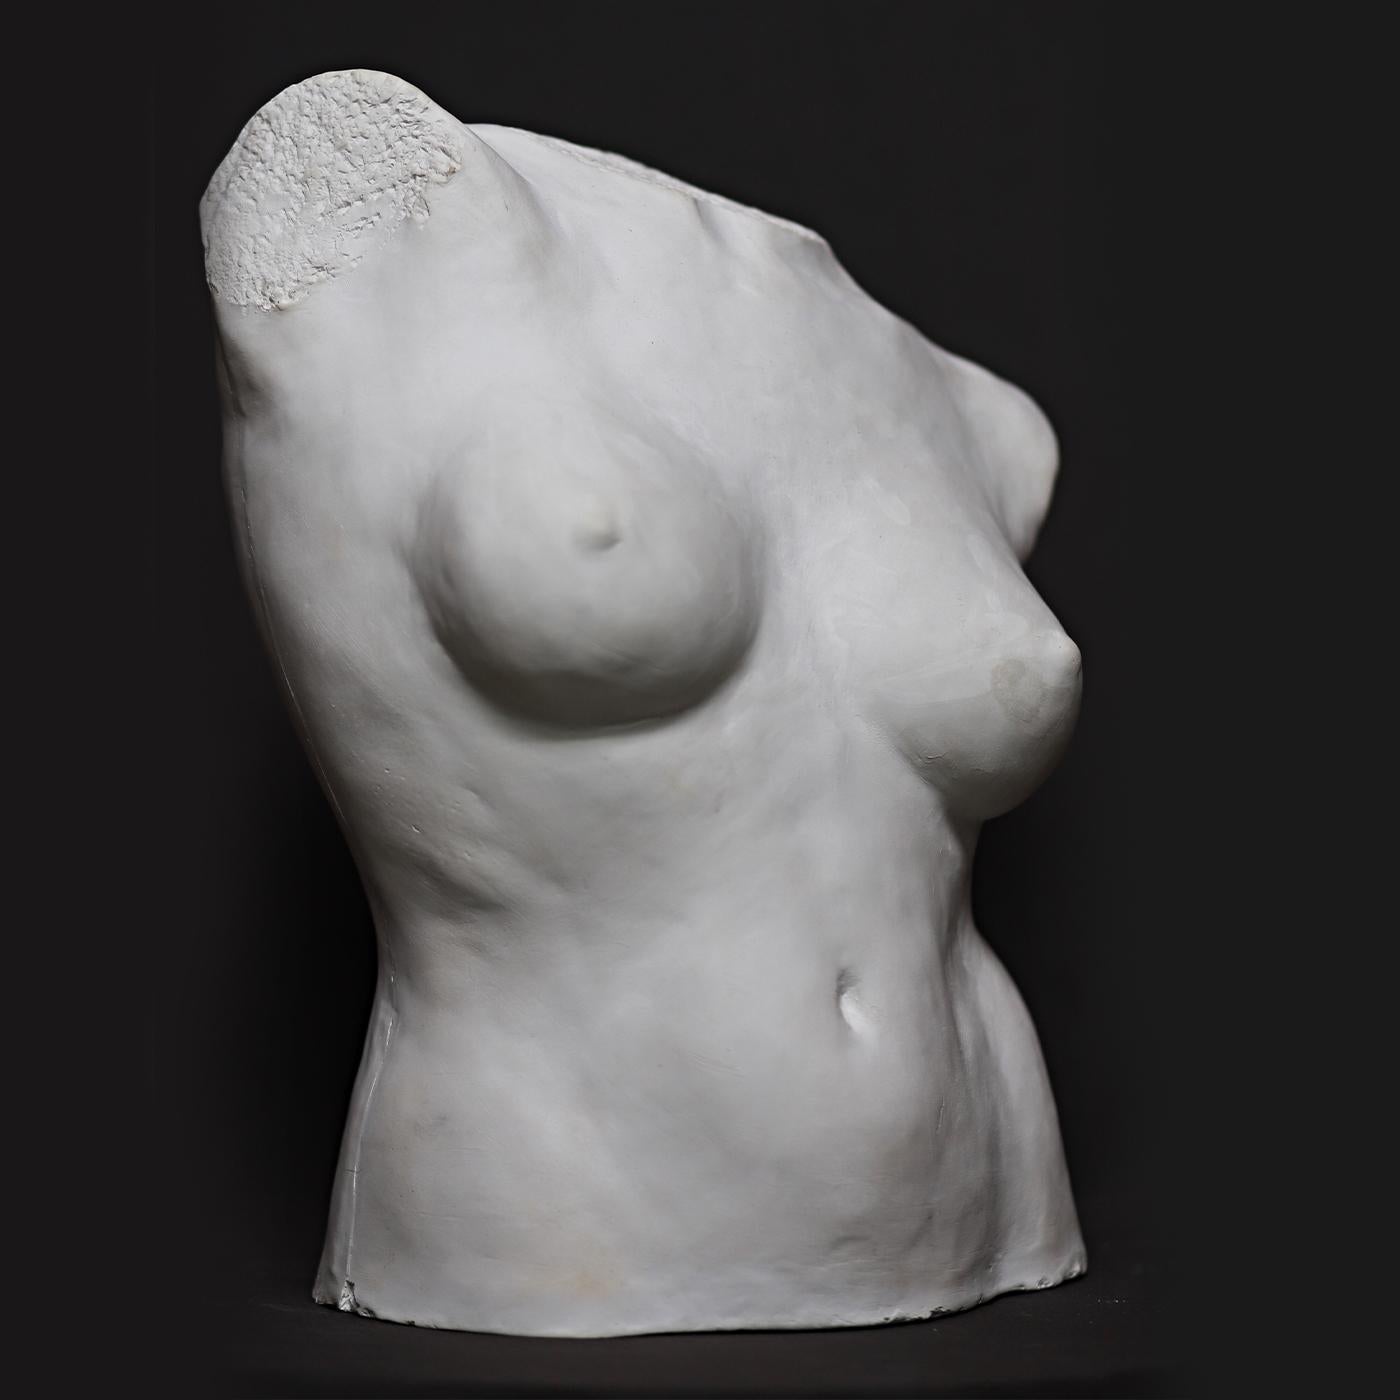 Gloriosa obra de arte del escultor Raffaello Romanelli, esta pieza es una escultura original y singular hecha a mano con yeso. Representa el busto de un cuerpo femenino desnudo, imbuido de gran dinamismo y movimiento sinuoso. Una preciosa pieza de